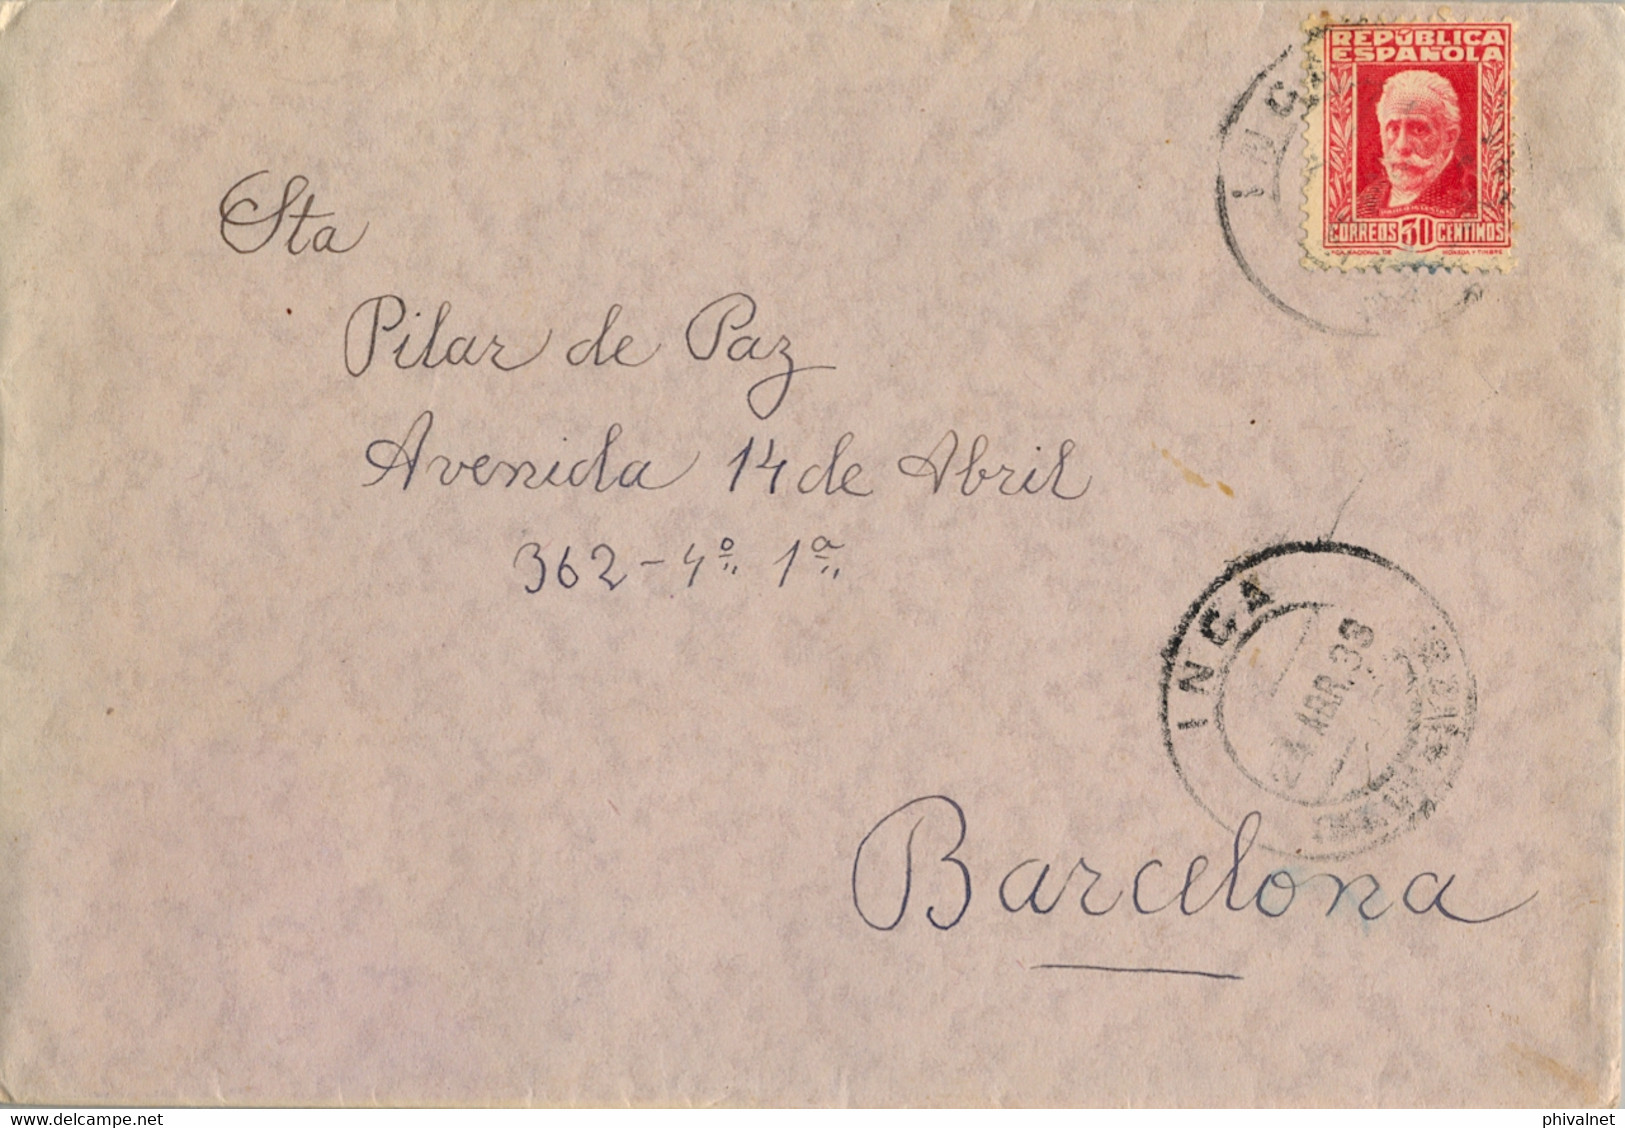 1933 BALEARES , SOBRE CIRCULADO ENTRE INCA Y BARCELONA - Storia Postale